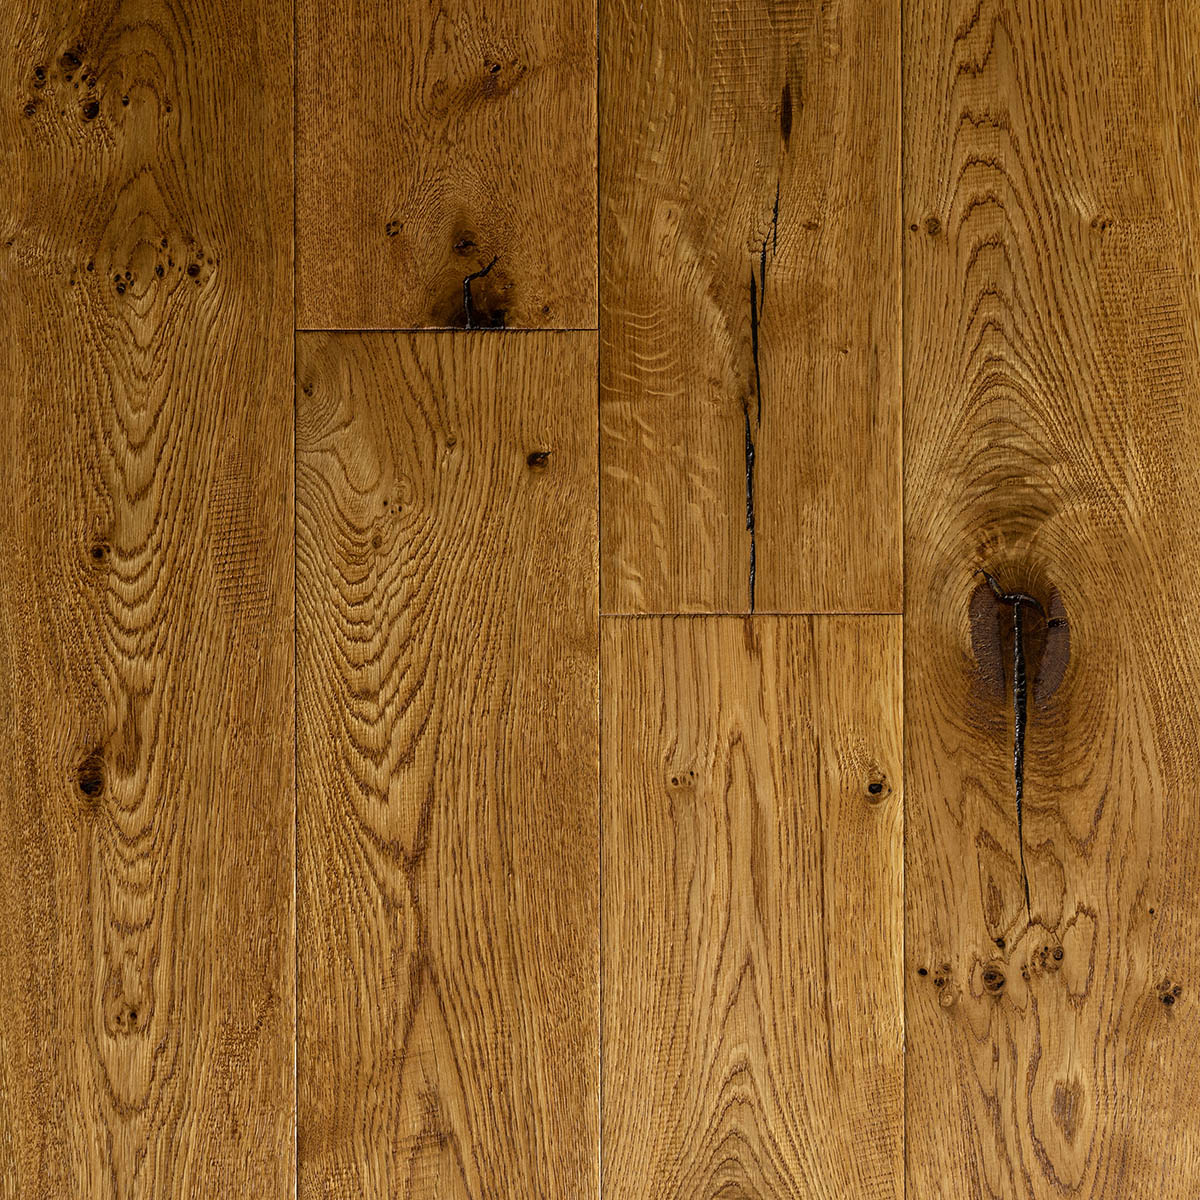 Midhope - Hand Worked Rustic Engineered Oak Floor